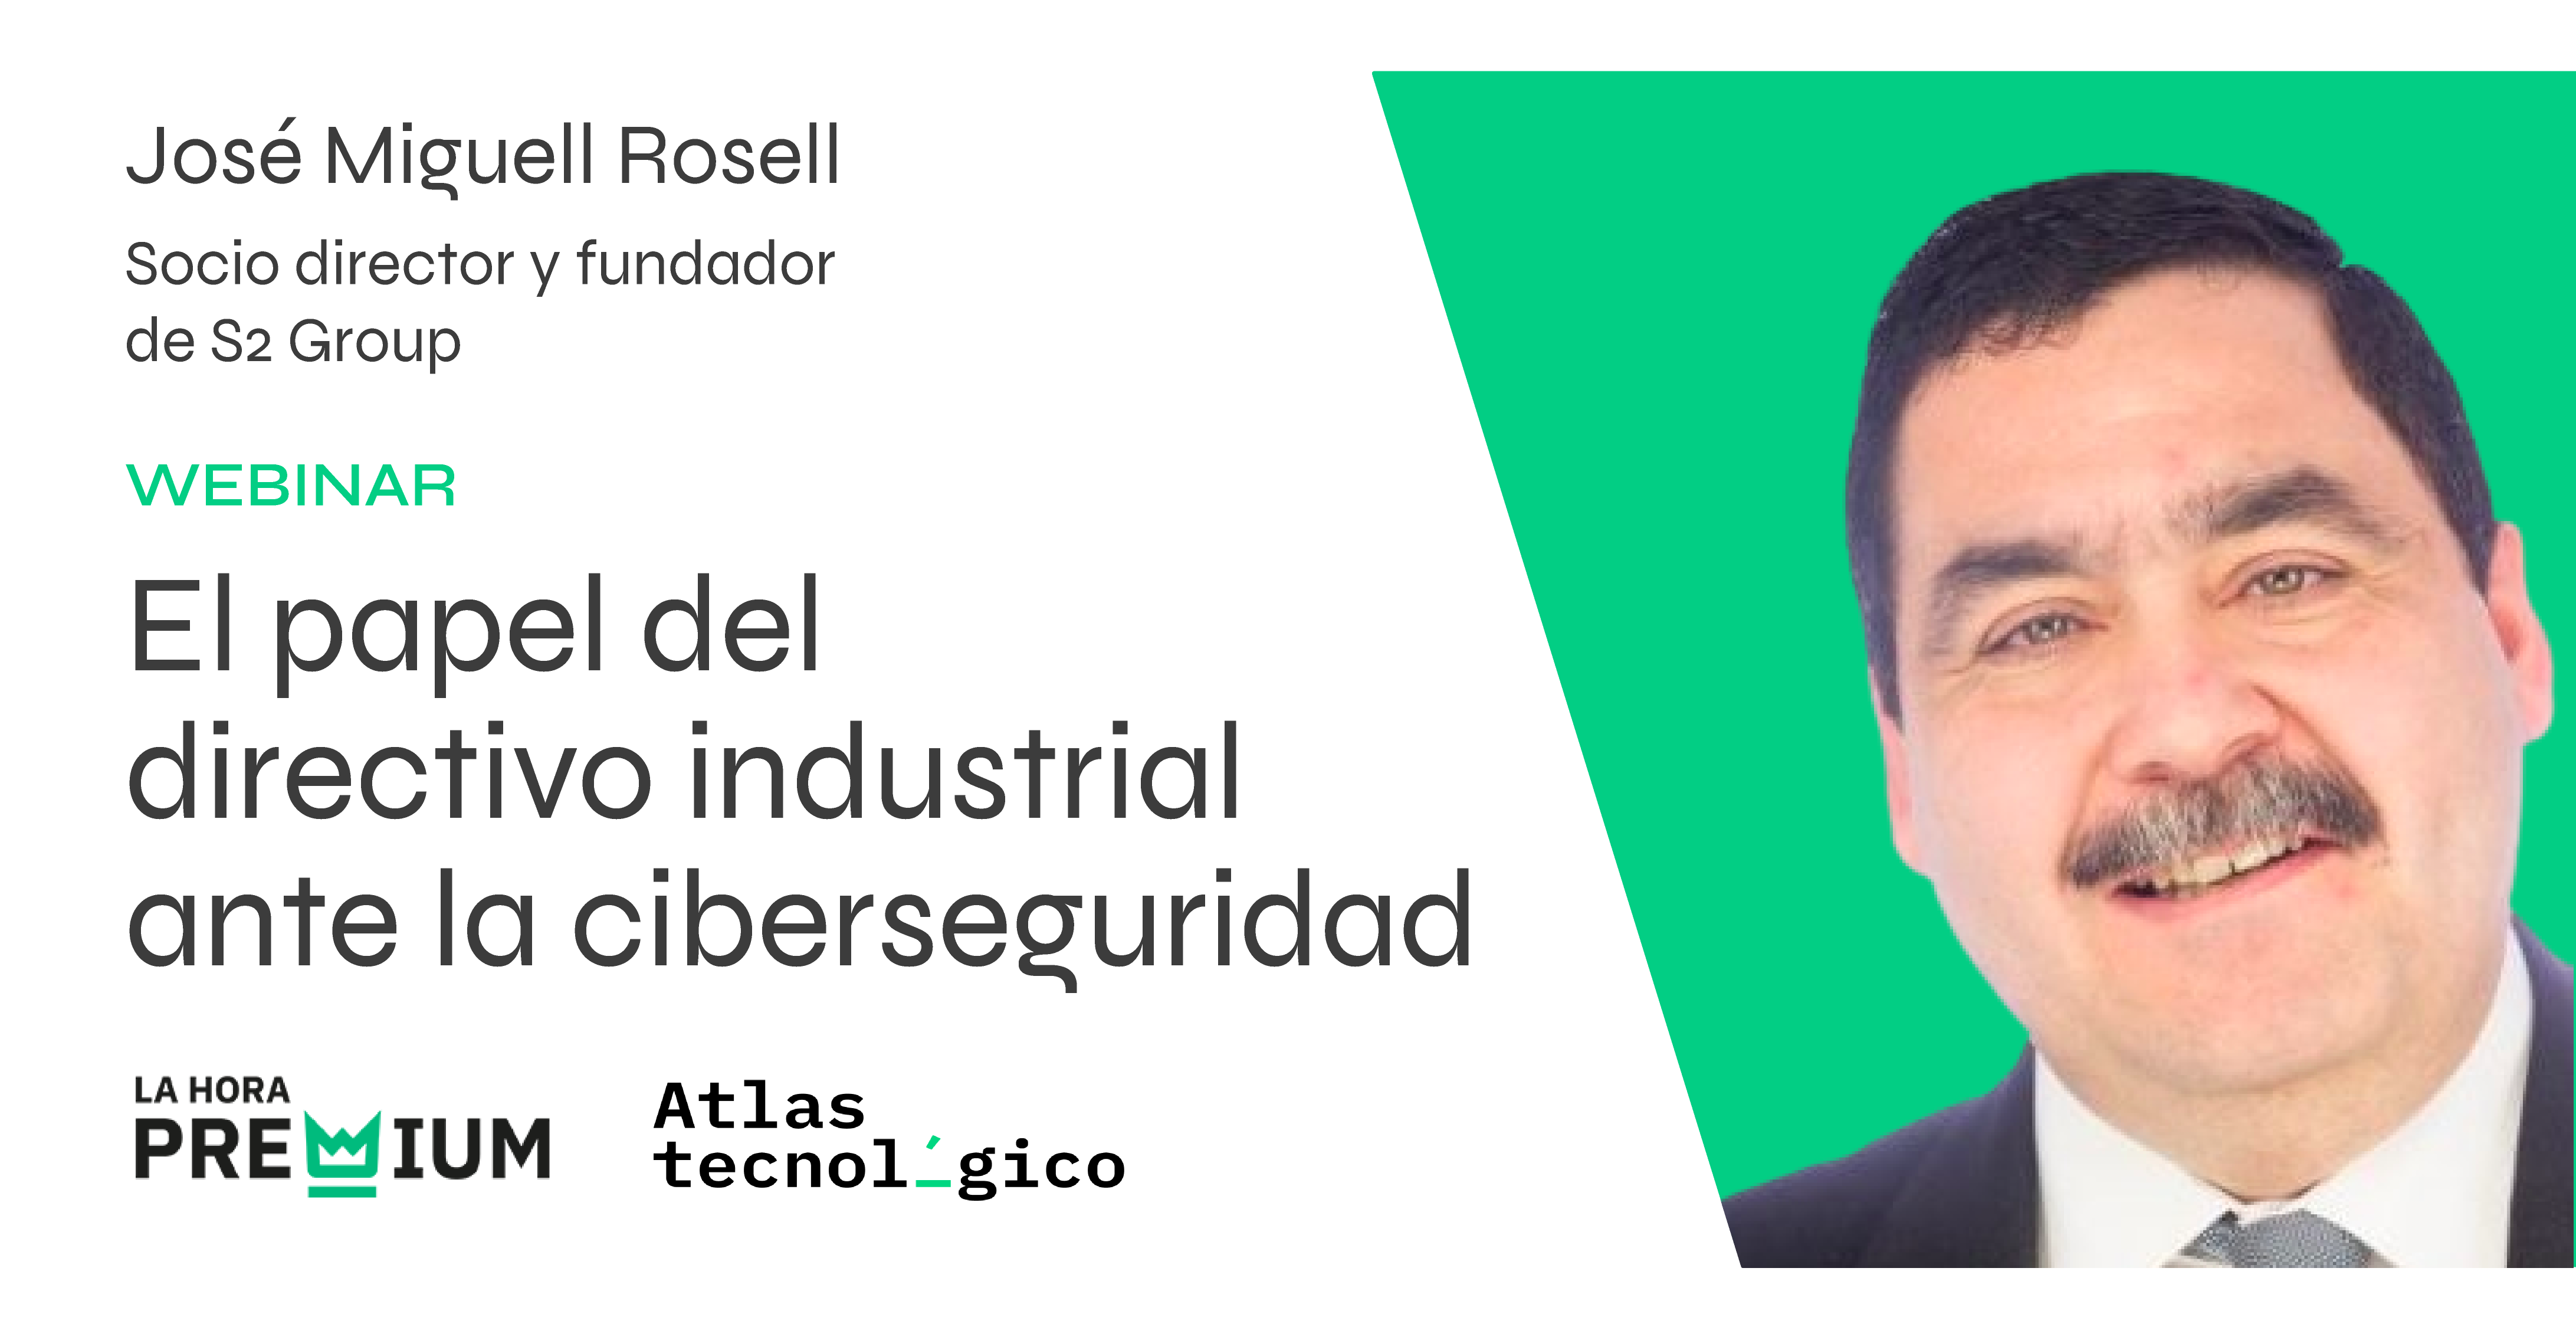 José Miguel Rosell hablará sobre el papel del directivo industrial ante la ciberseguridad en la Hora Premium